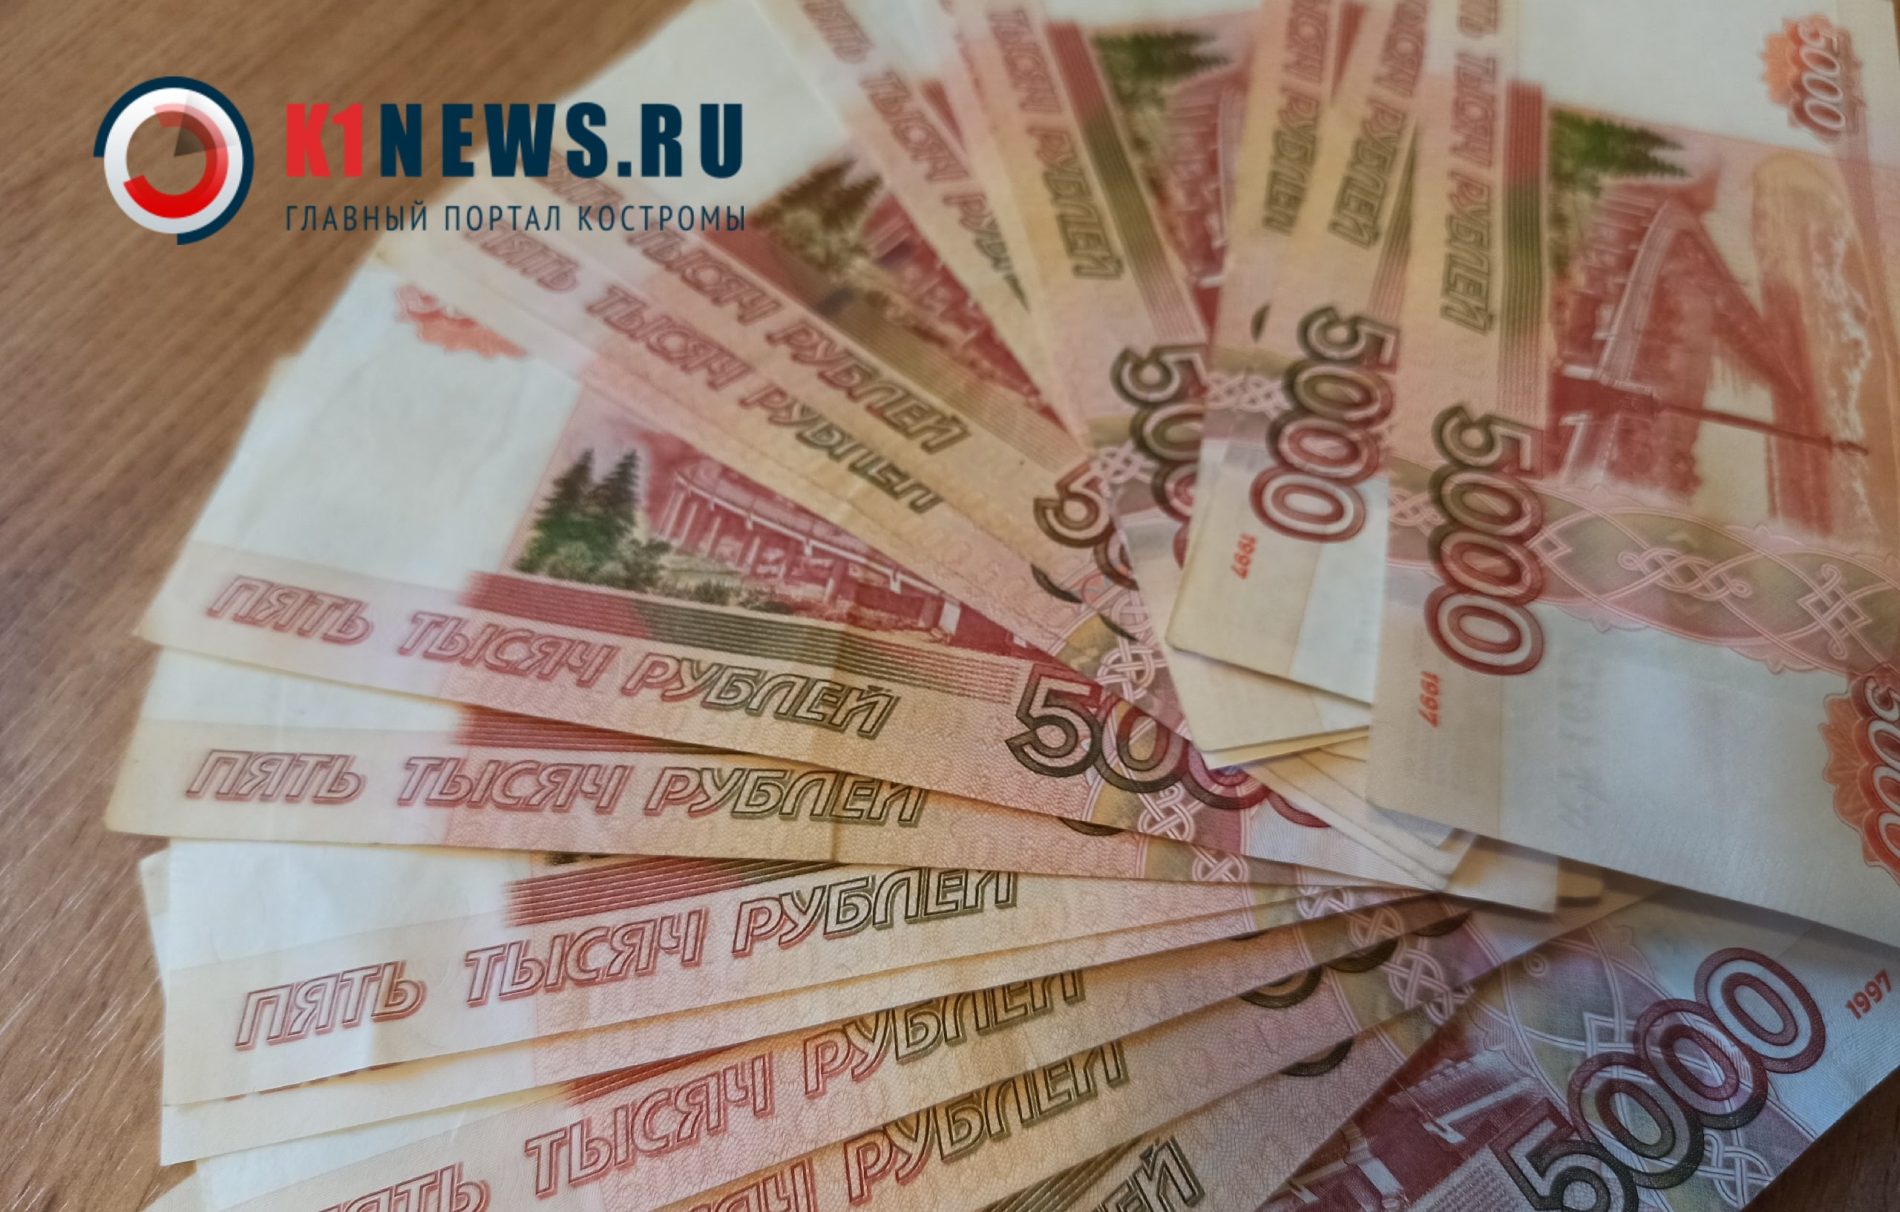 Ярославцы украли у костромского кооператива больше полумиллиона рублей